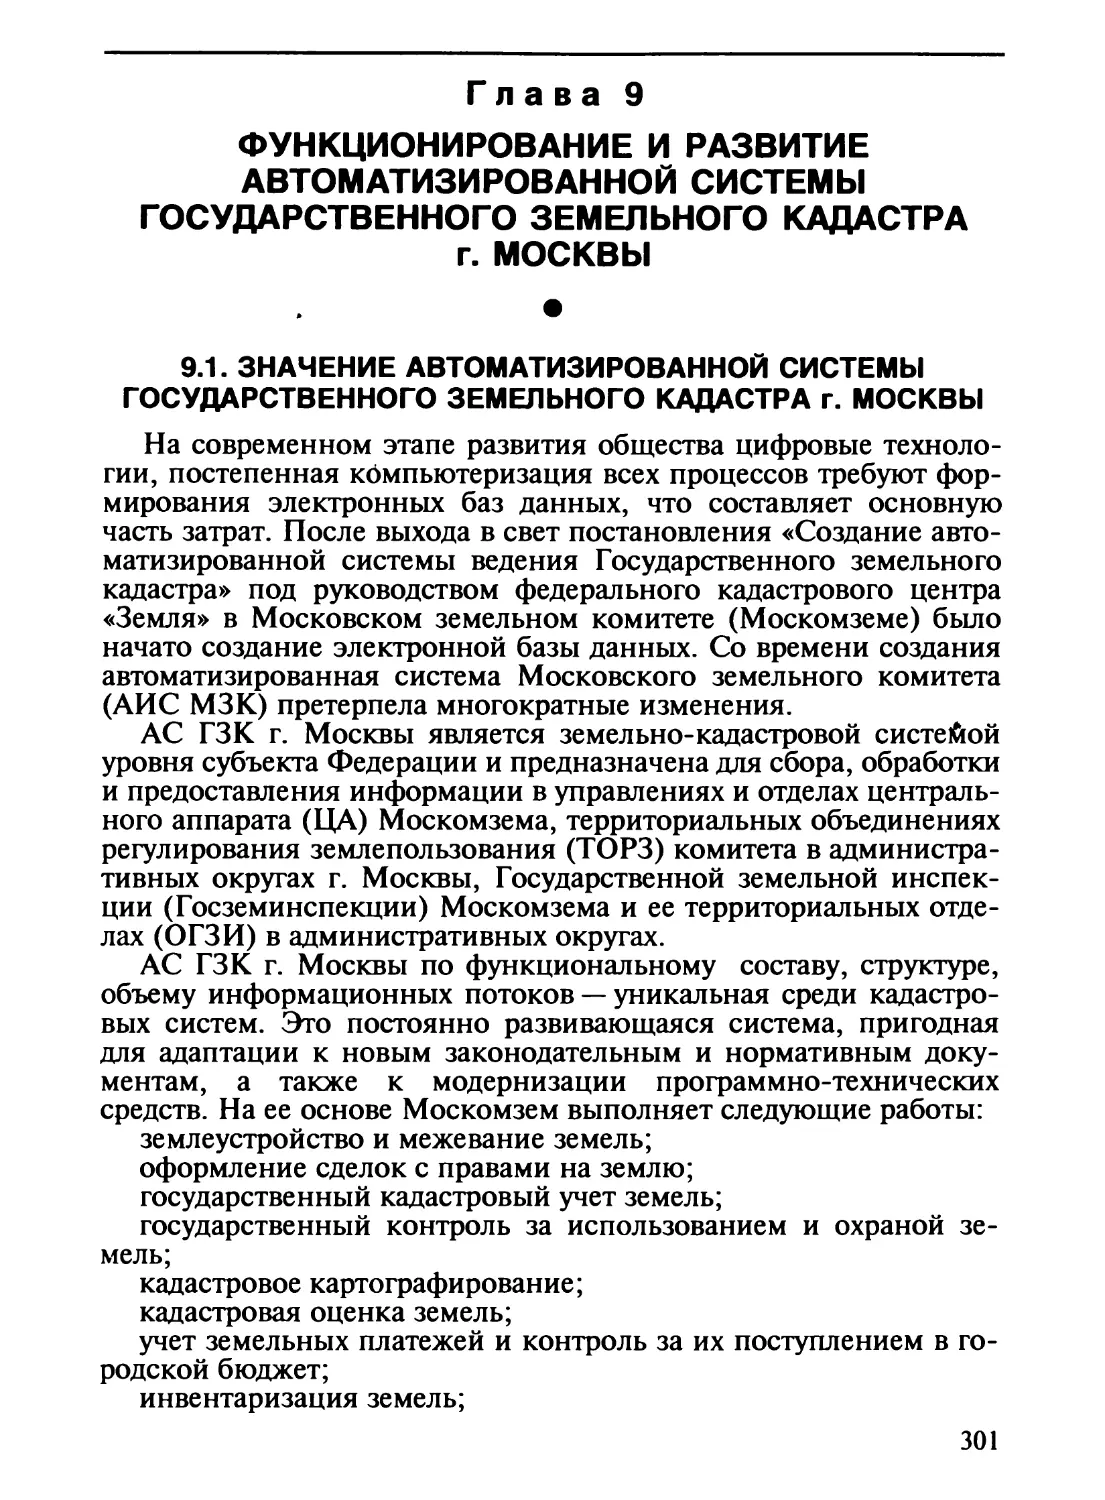 Глава 9. Функционирование и развитие автоматизированной системы Государственного земельного кадастра г. Москвы